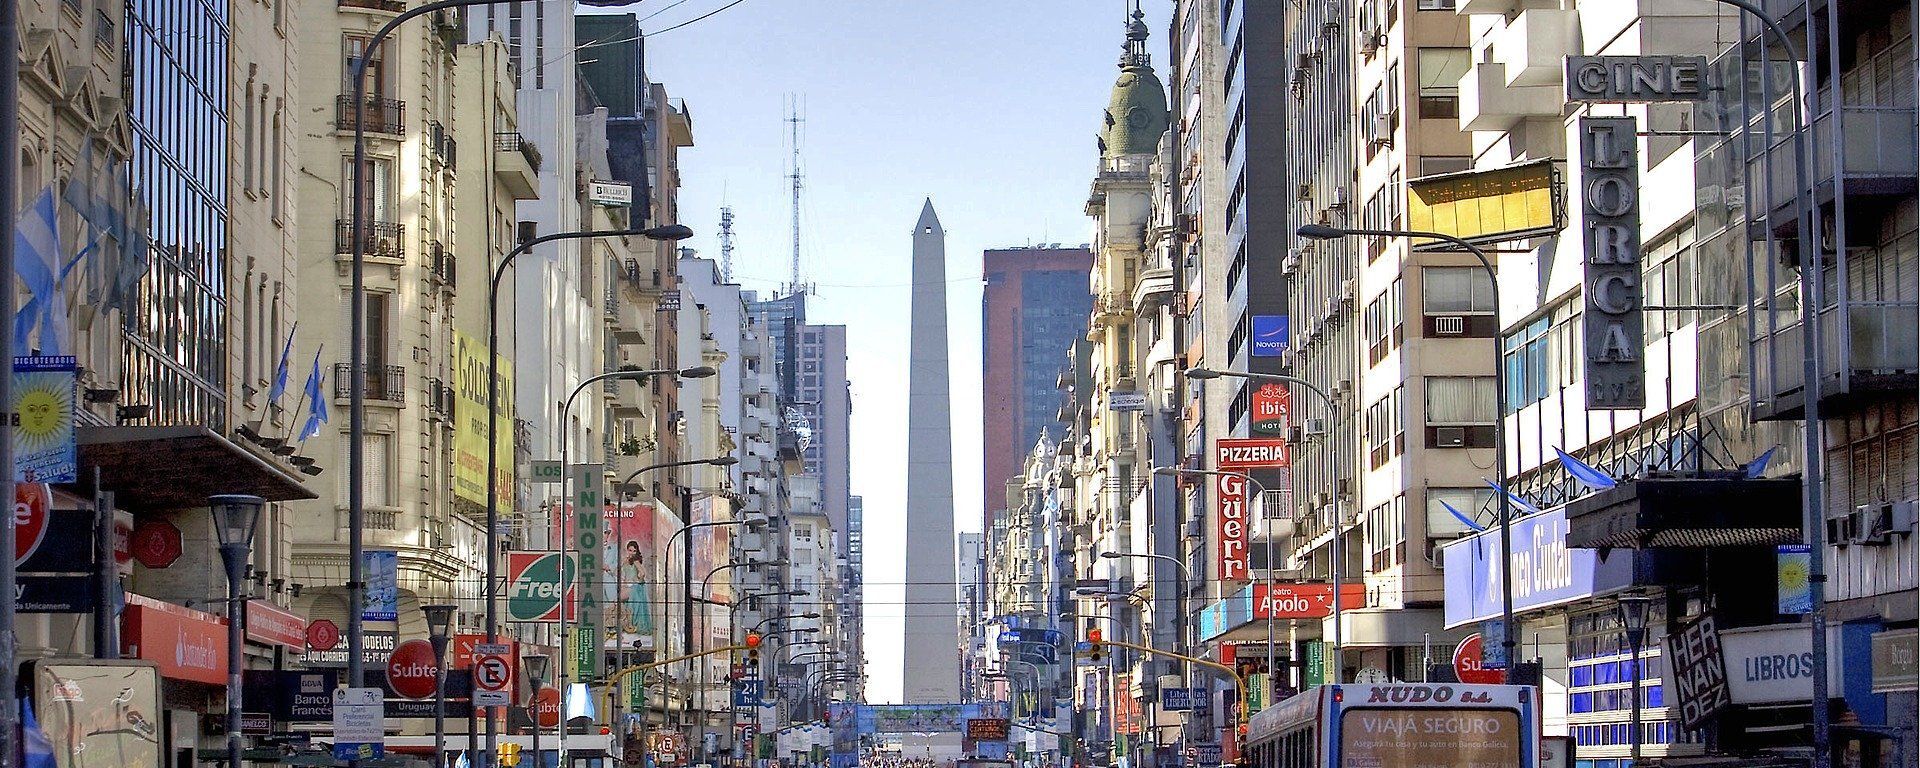 Una postal de la Ciudad de Buenos Aires, la capital de Argentina. Imagen referencial - Sputnik Mundo, 1920, 07.12.2021